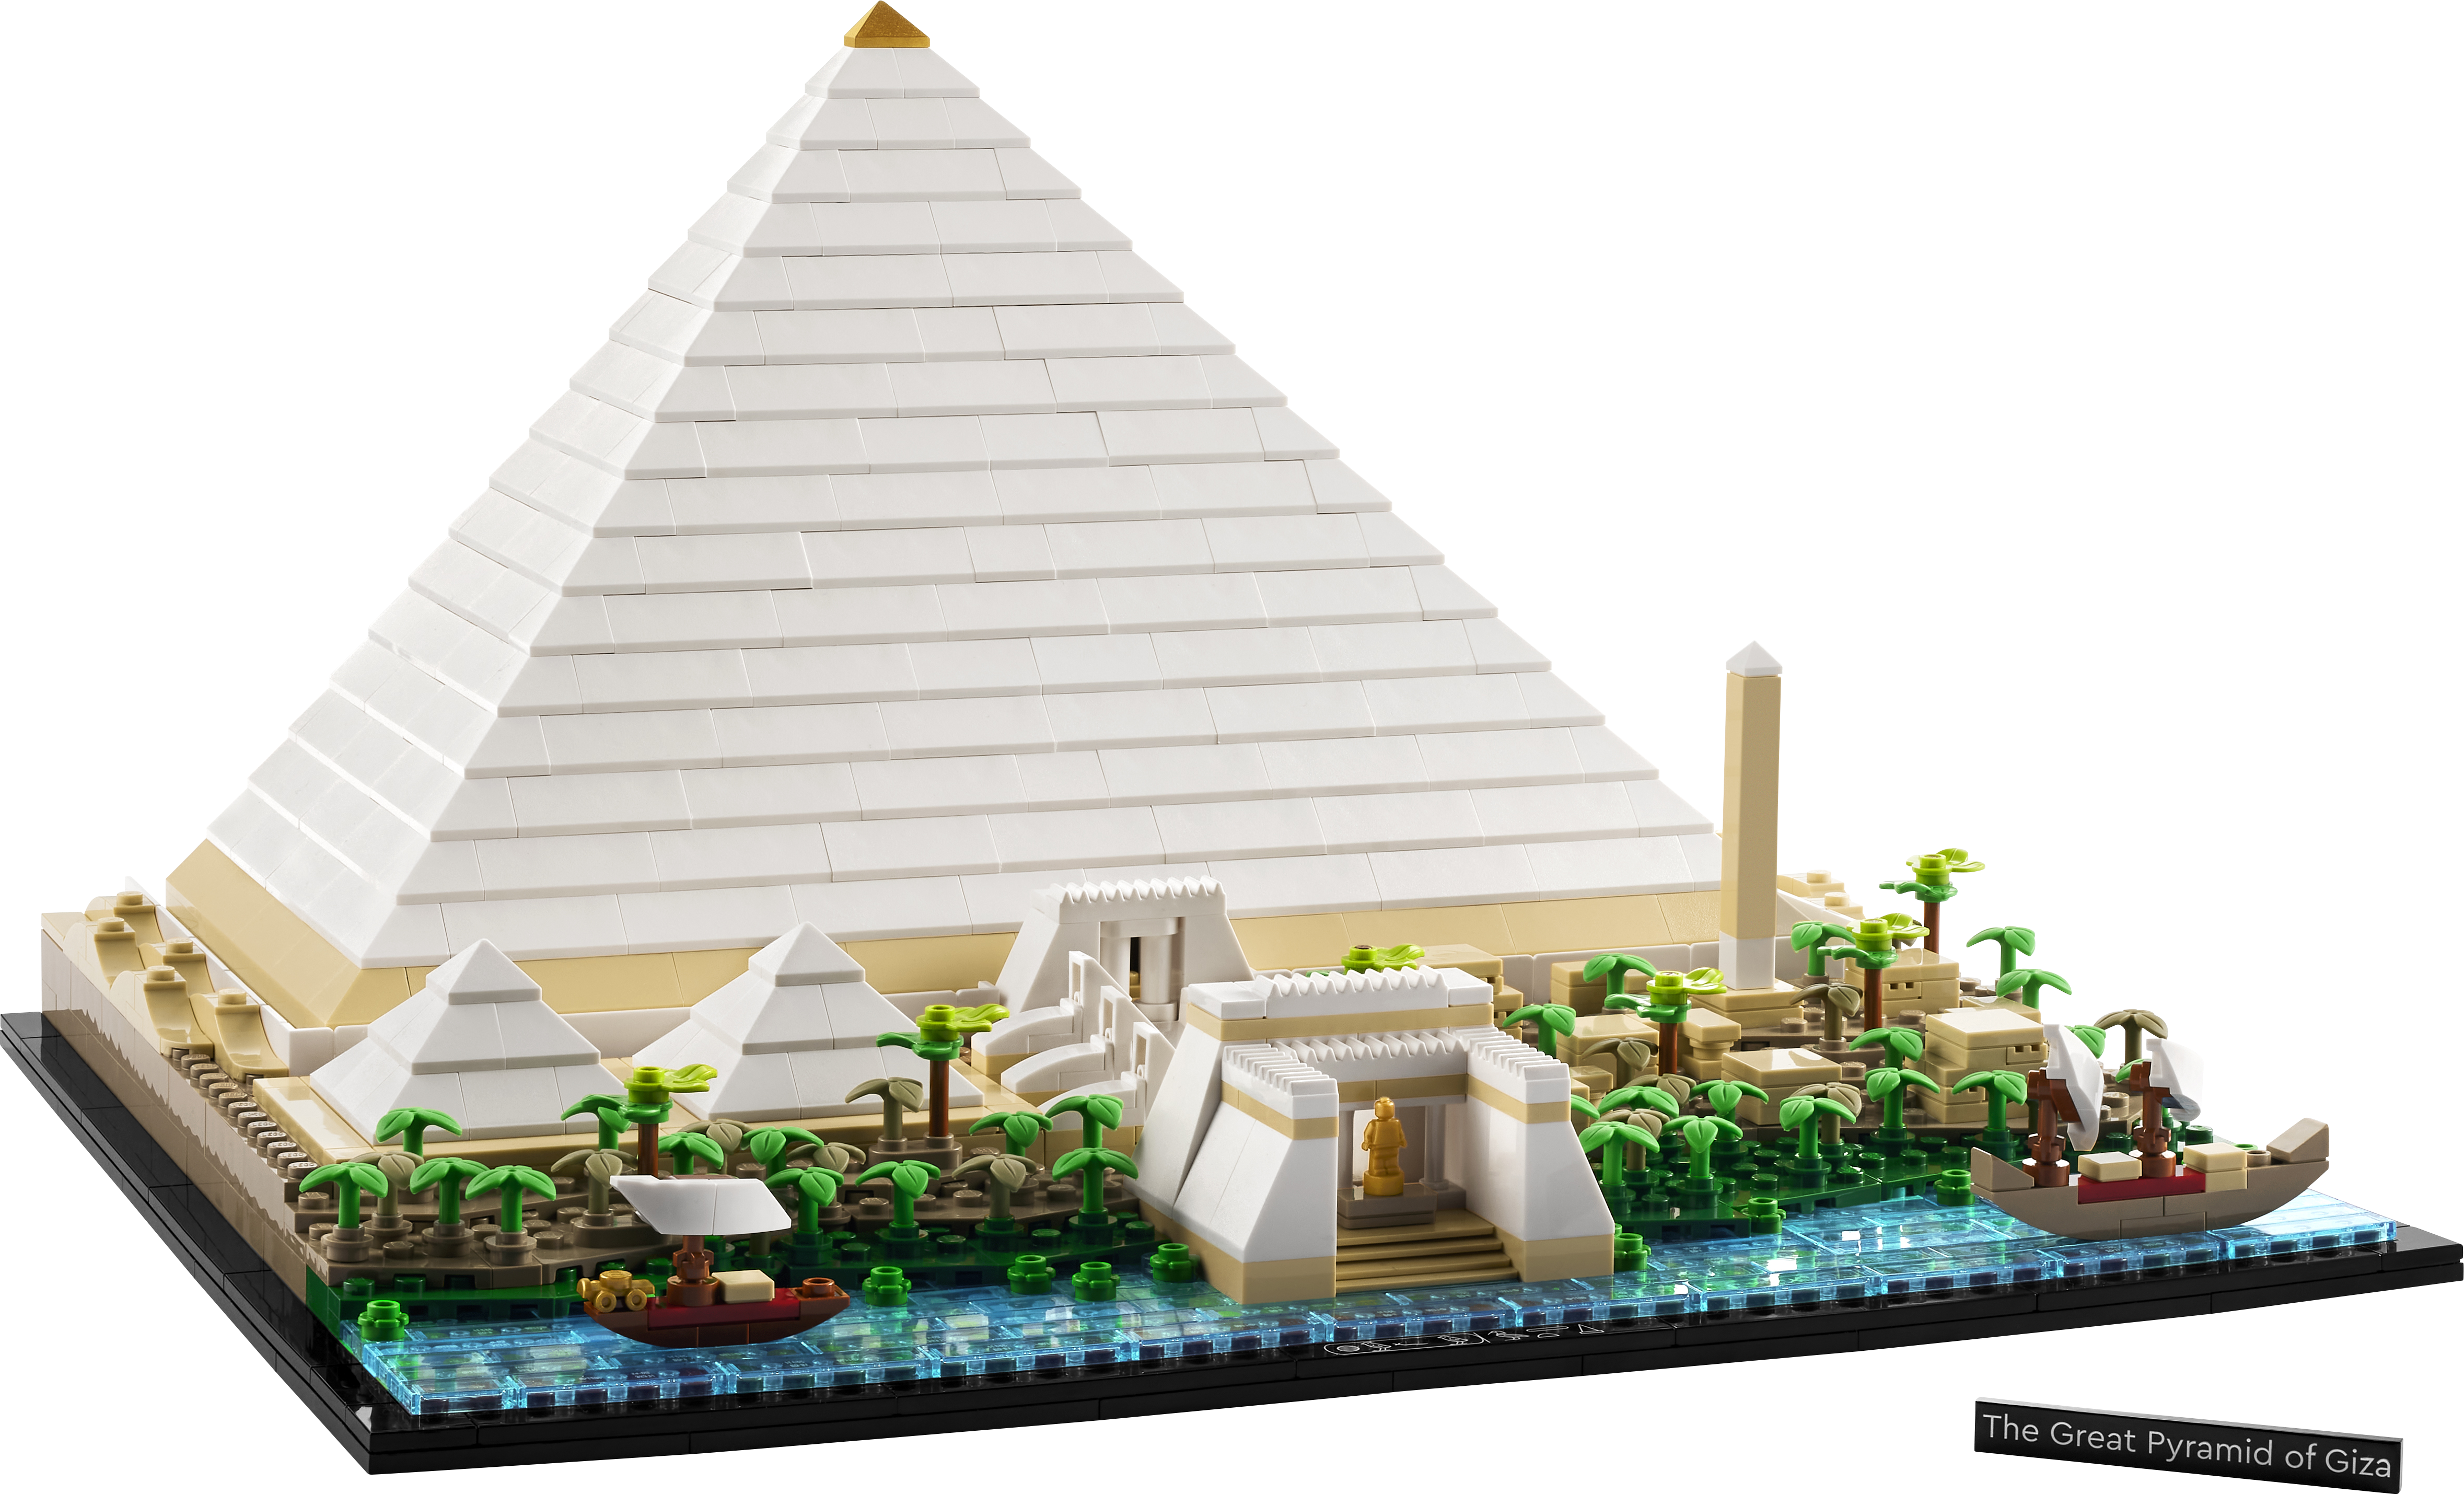 Lego 21058 Architecture Pyramids Of Giza